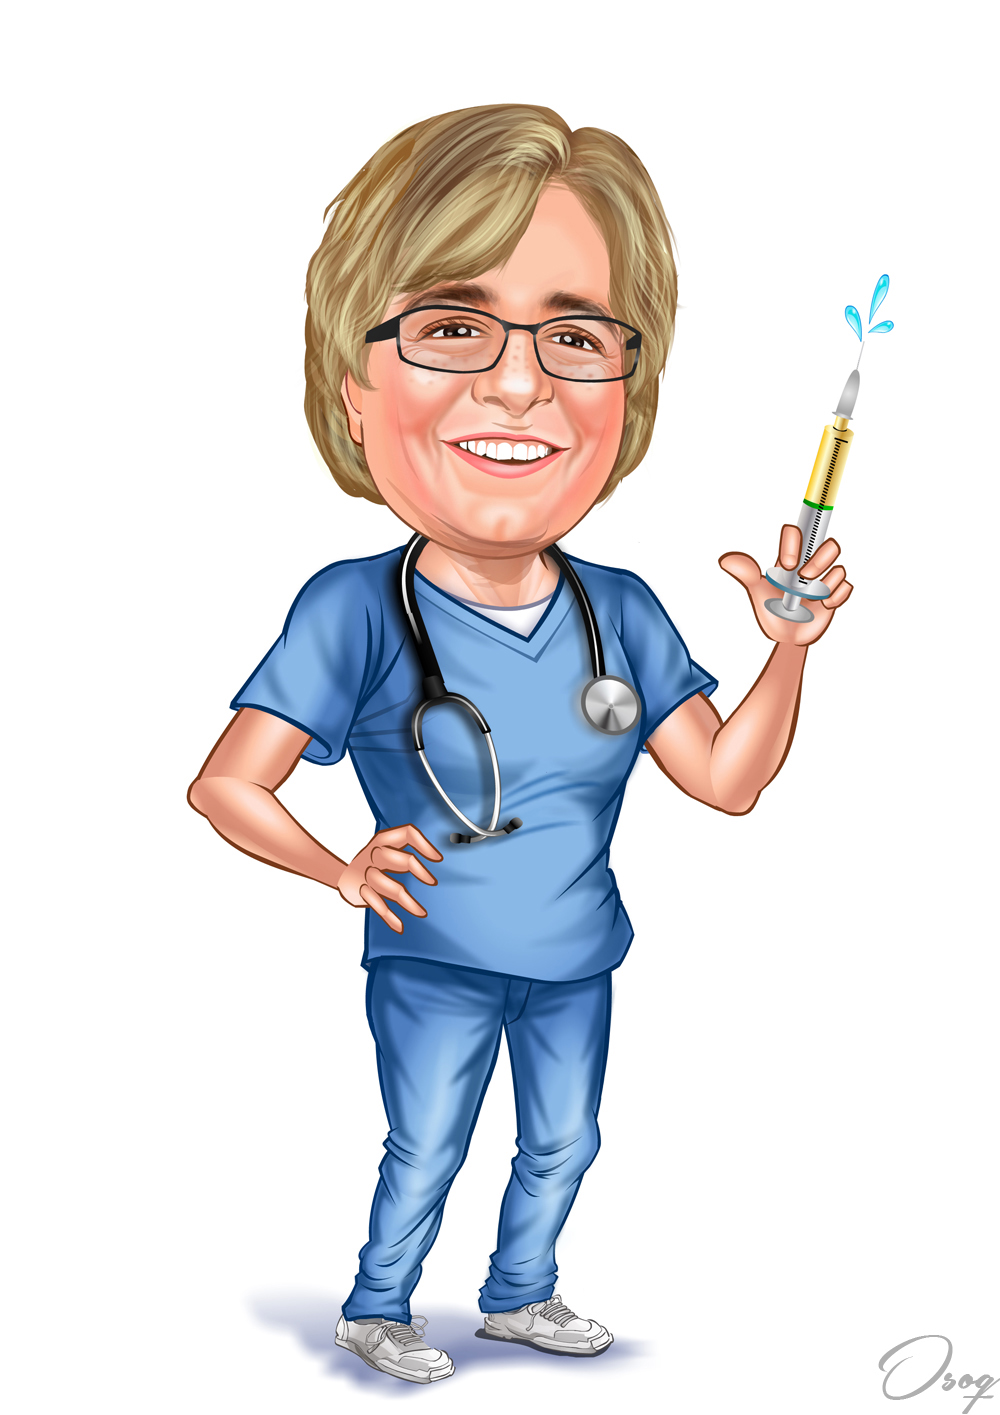 Nurse Cartoon | Osoq.com